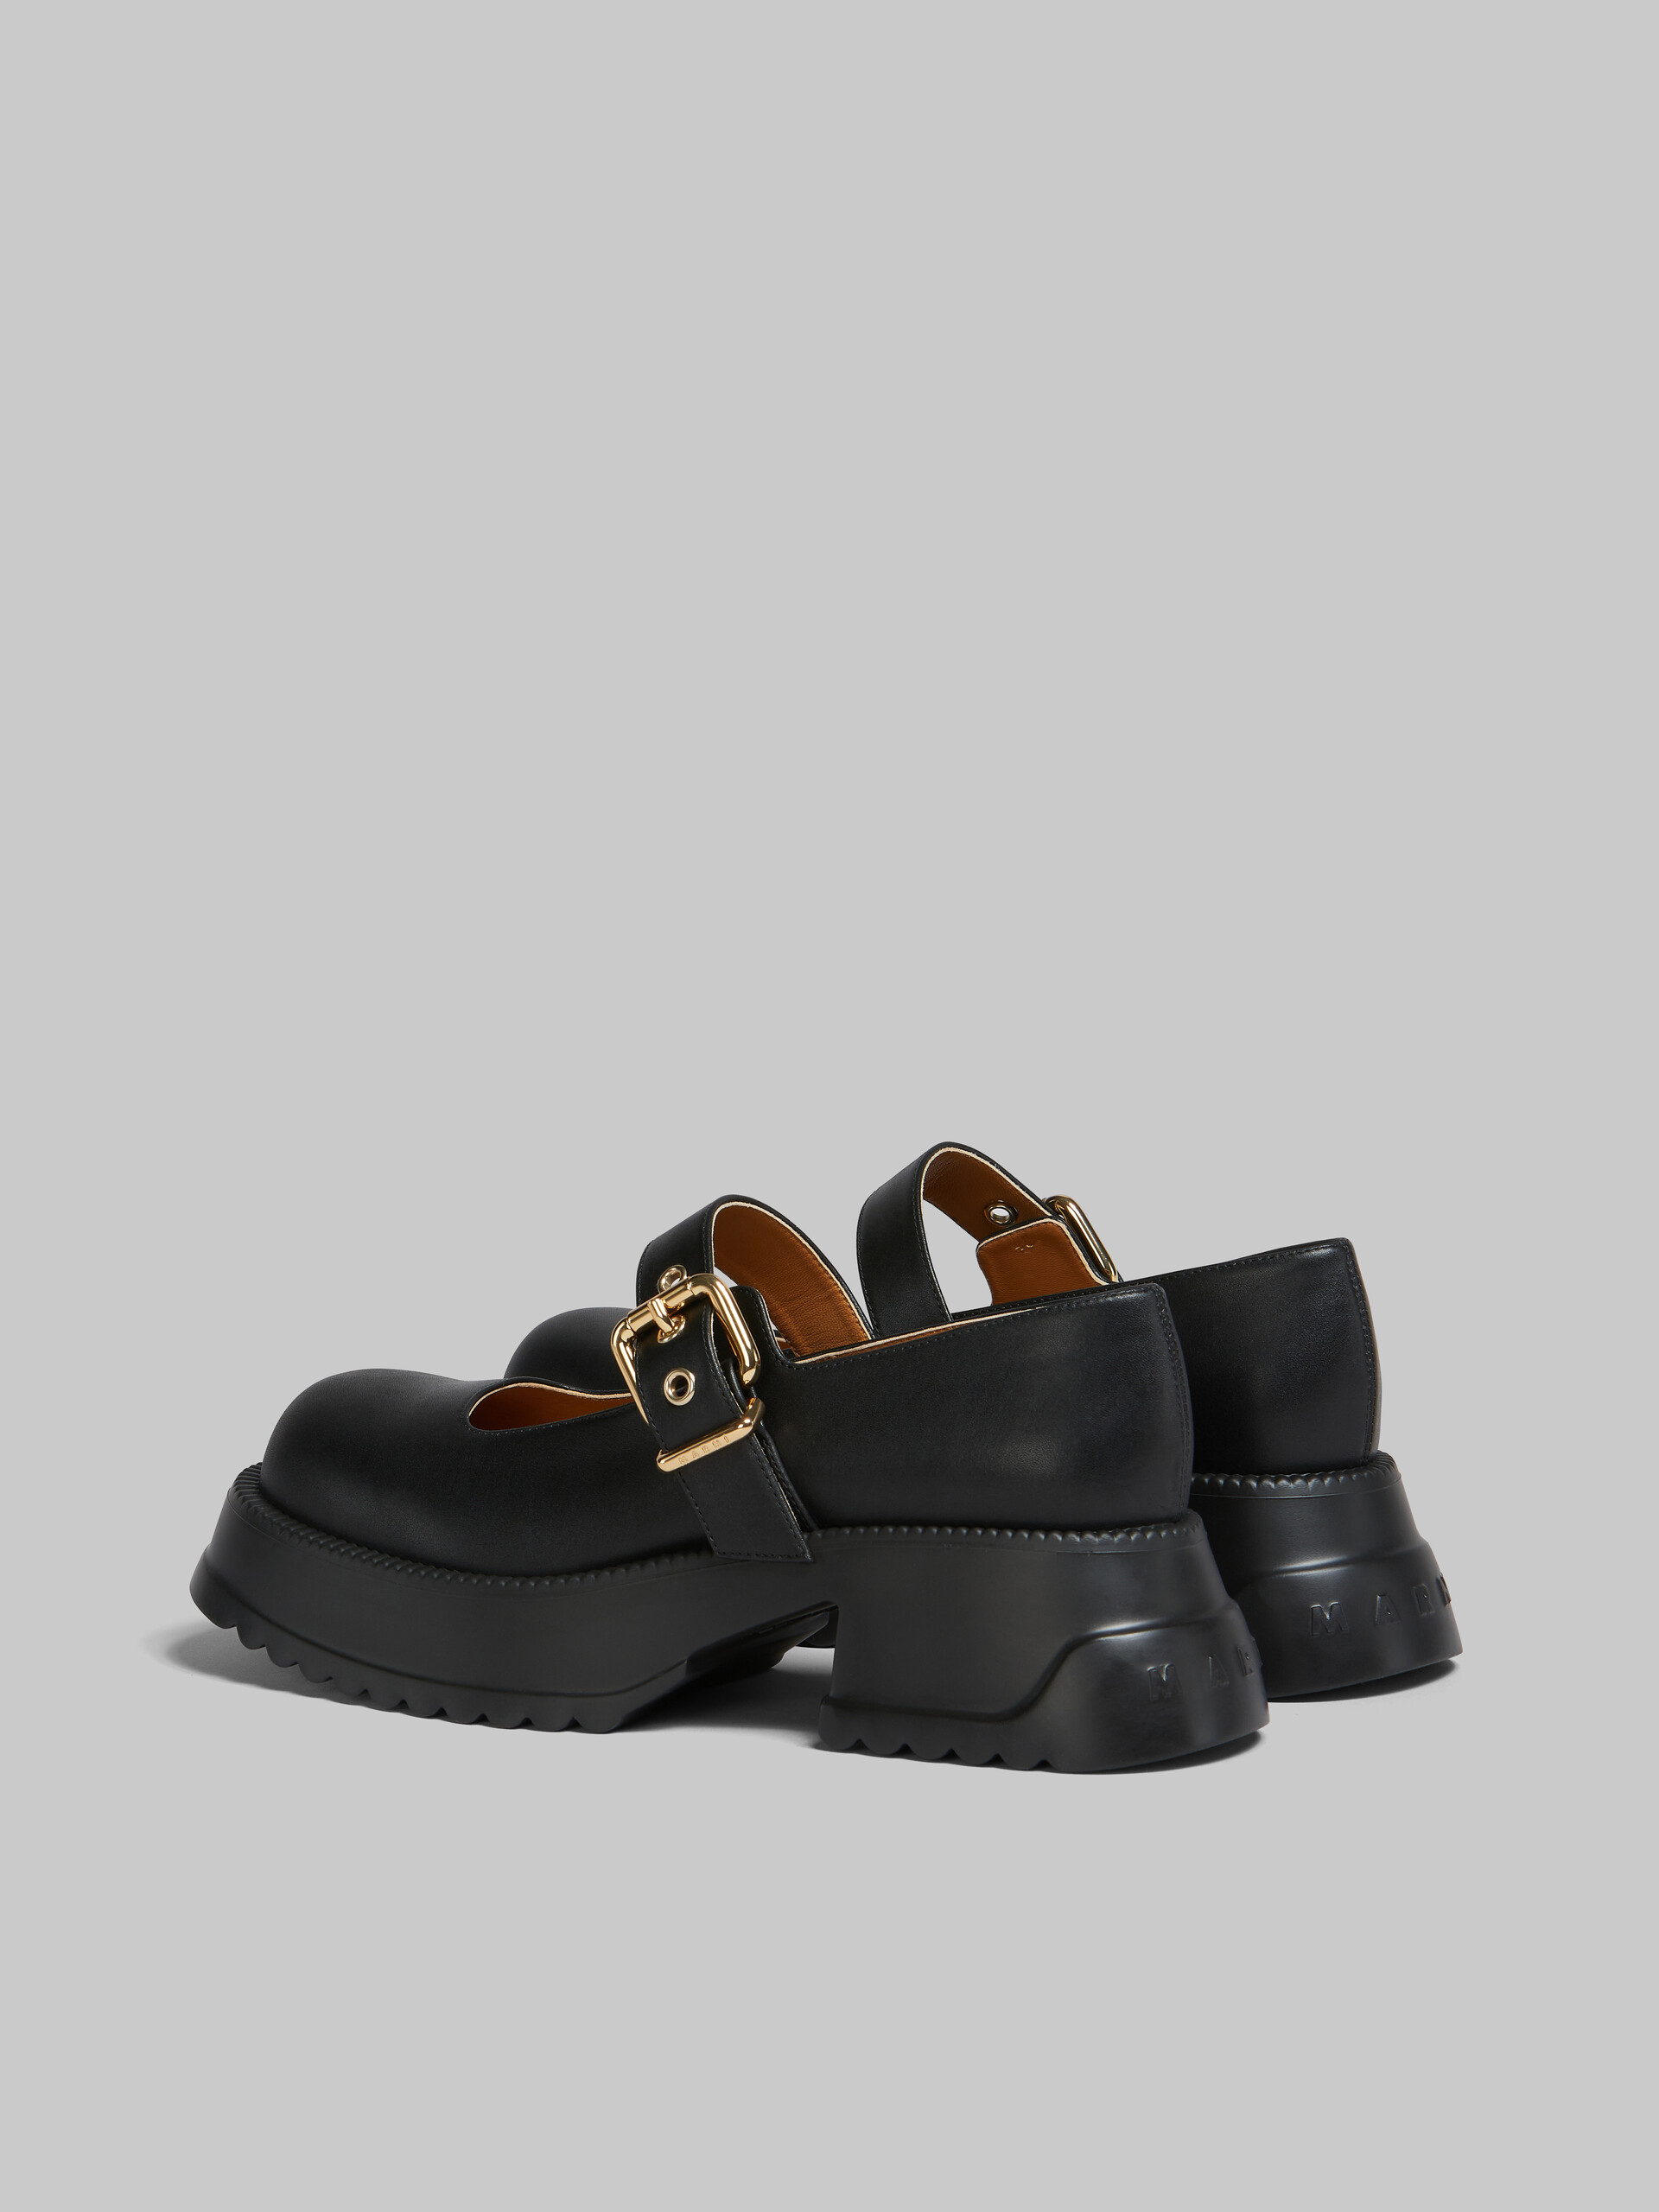 Chaussures Mary Jane en cuir noir avec semelle à plateforme - Sneakers - Image 3